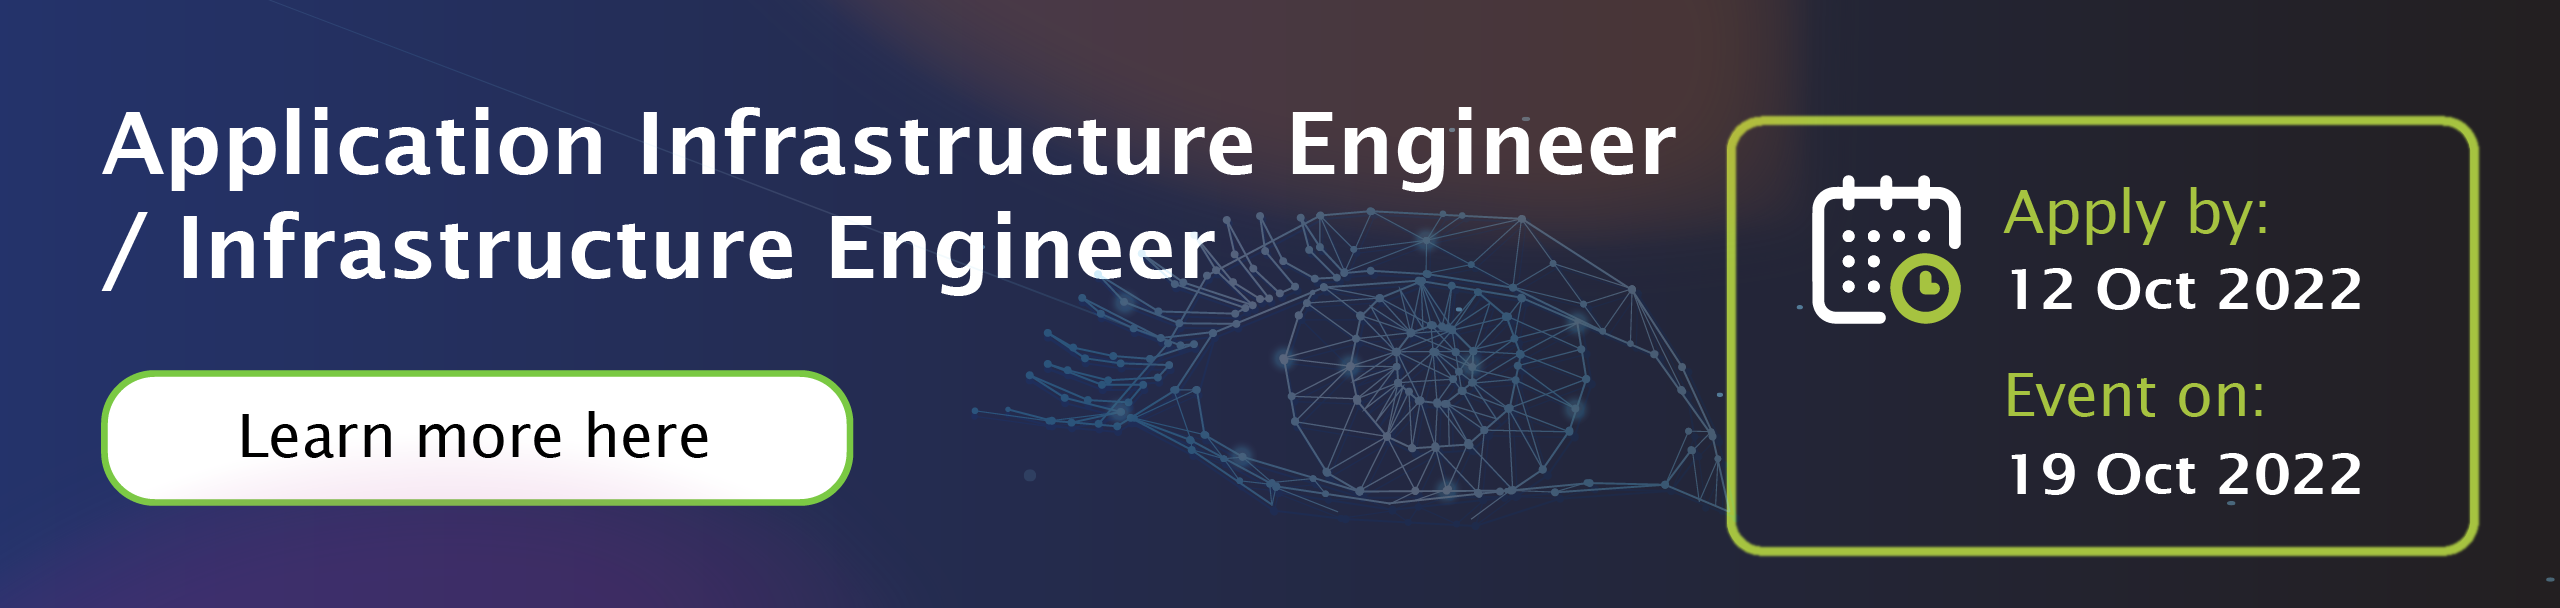 TechHunt 2022 - Infrastructure Engineer